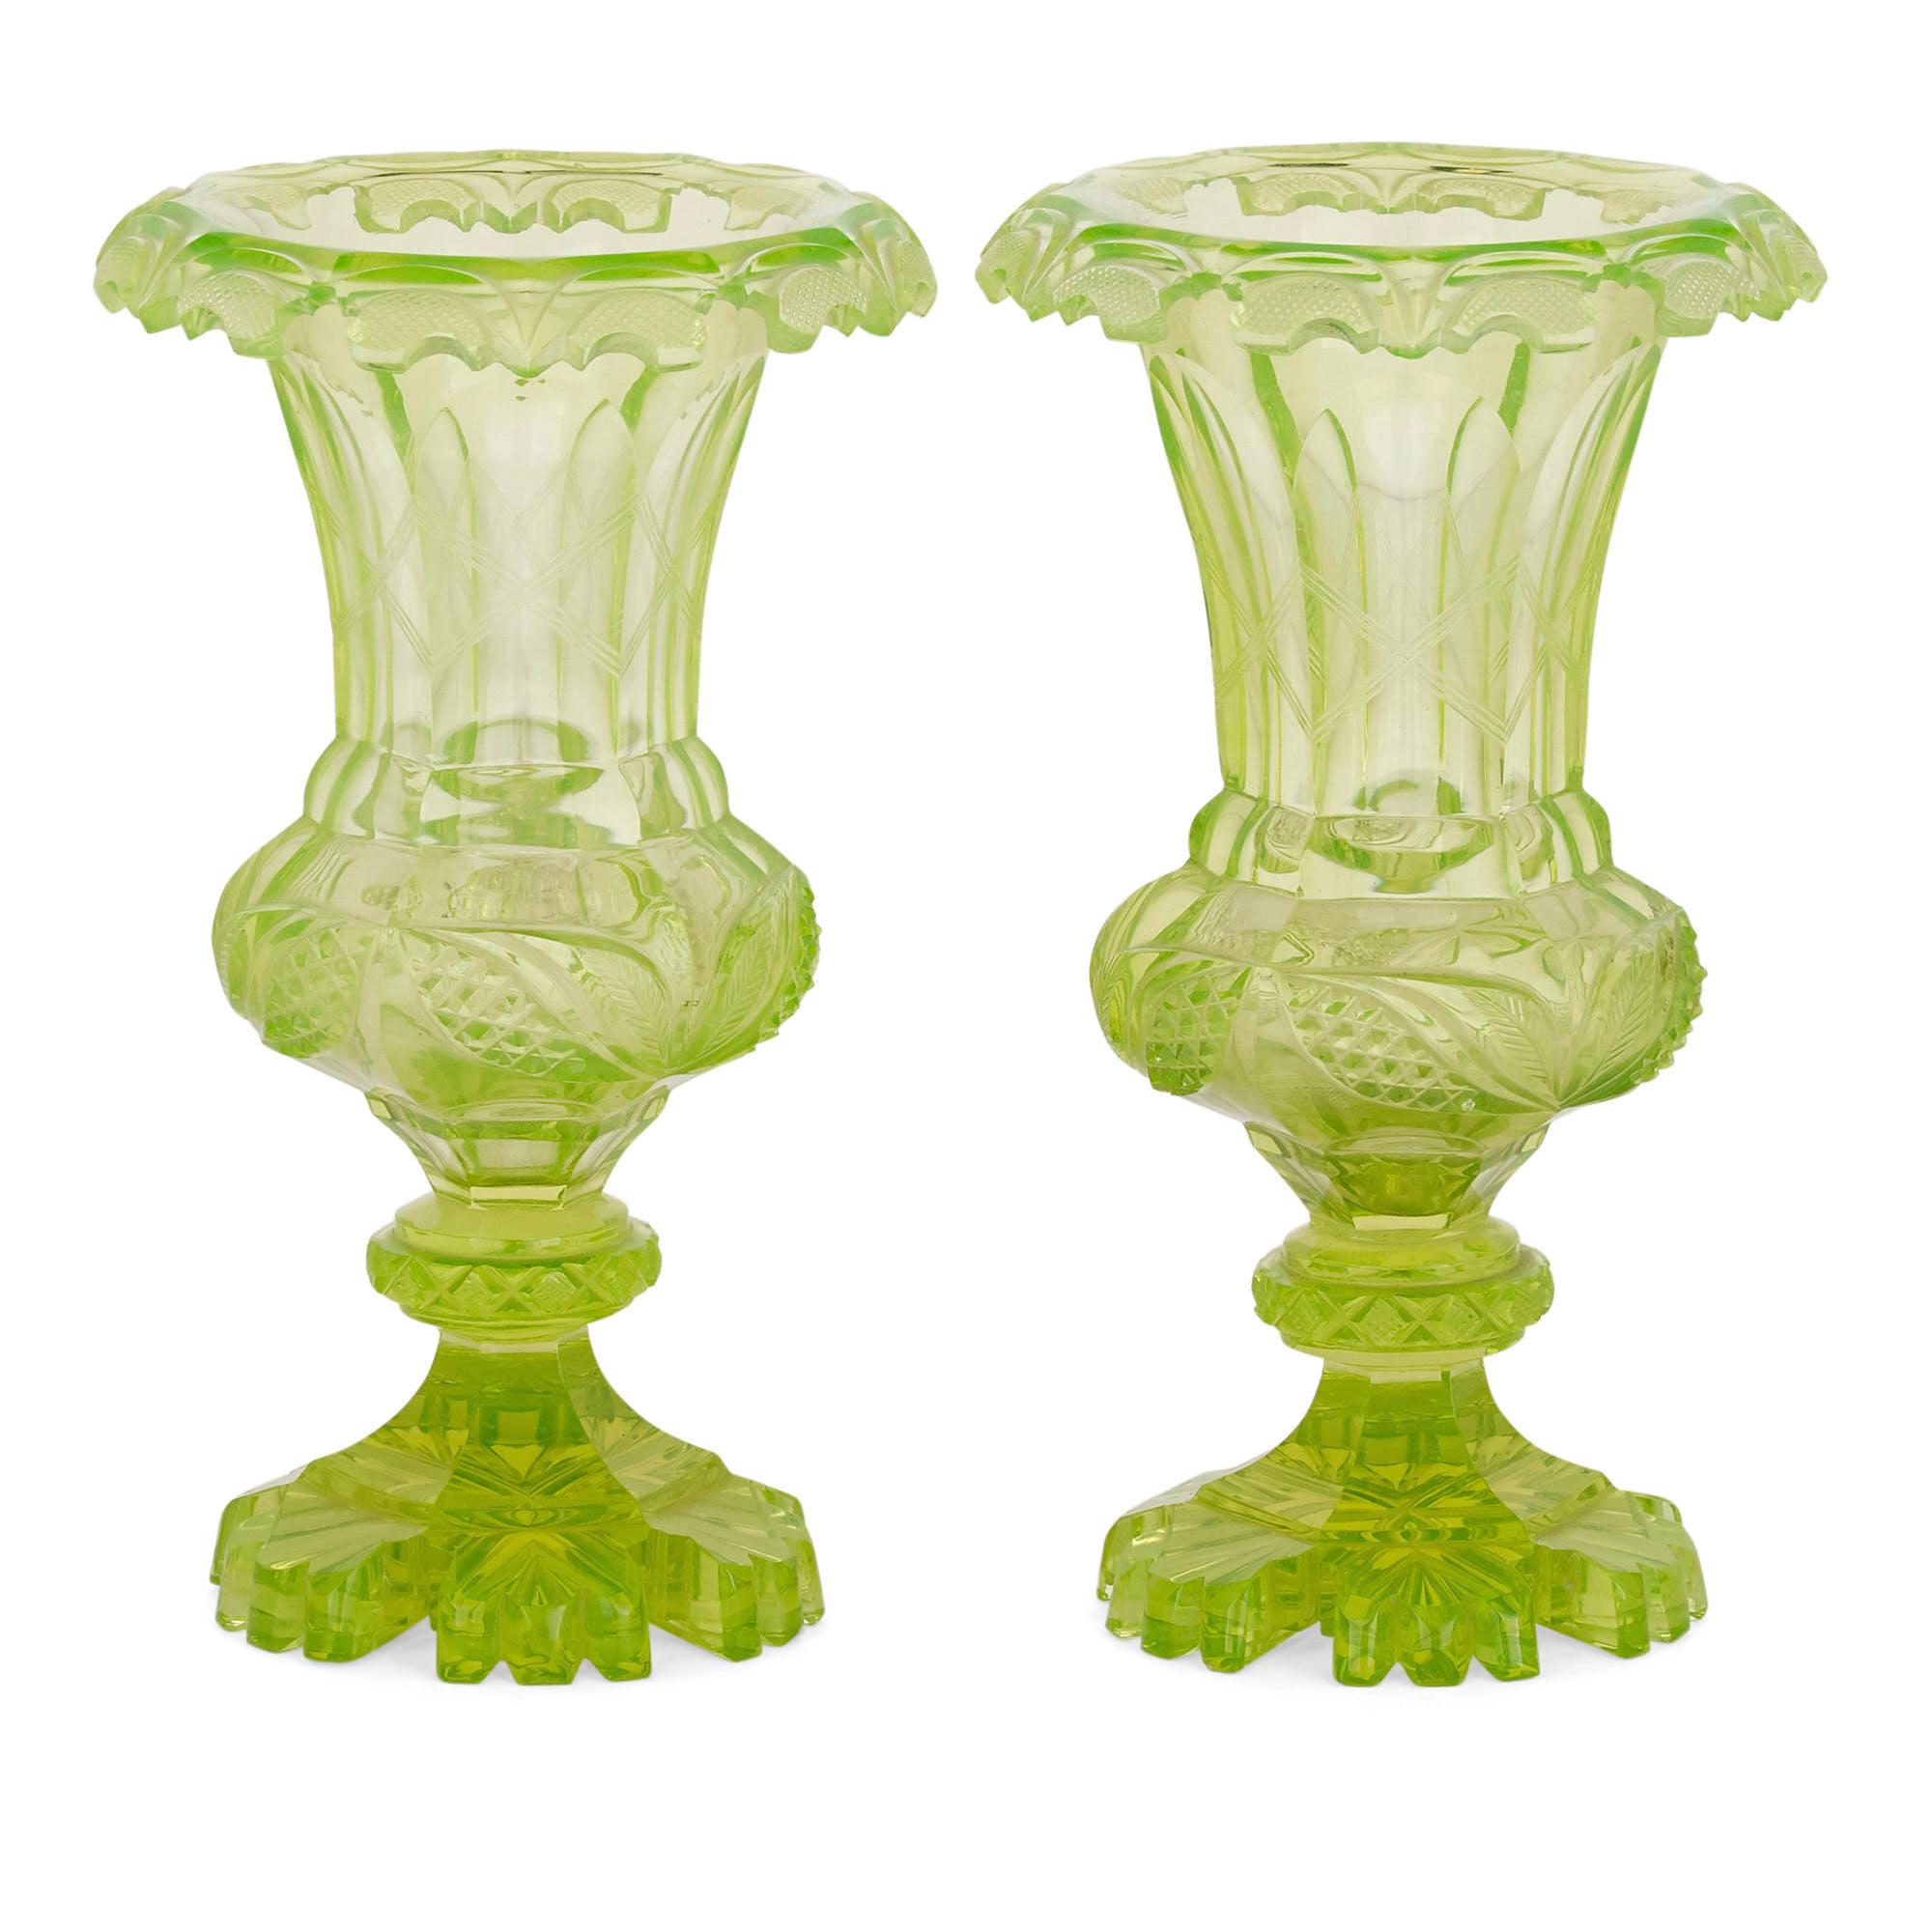 Paar antike böhmische Vasen aus grünem geschliffenem Glas aus dem 19
Böhmisch, um 1870
Abmessungen: Höhe 23cm, Durchmesser 13cm

Dieses leuchtend grüne böhmische Vasenpaar ist aus Uranglas geschliffen und im Stil einer Campana-Vase gestaltet.